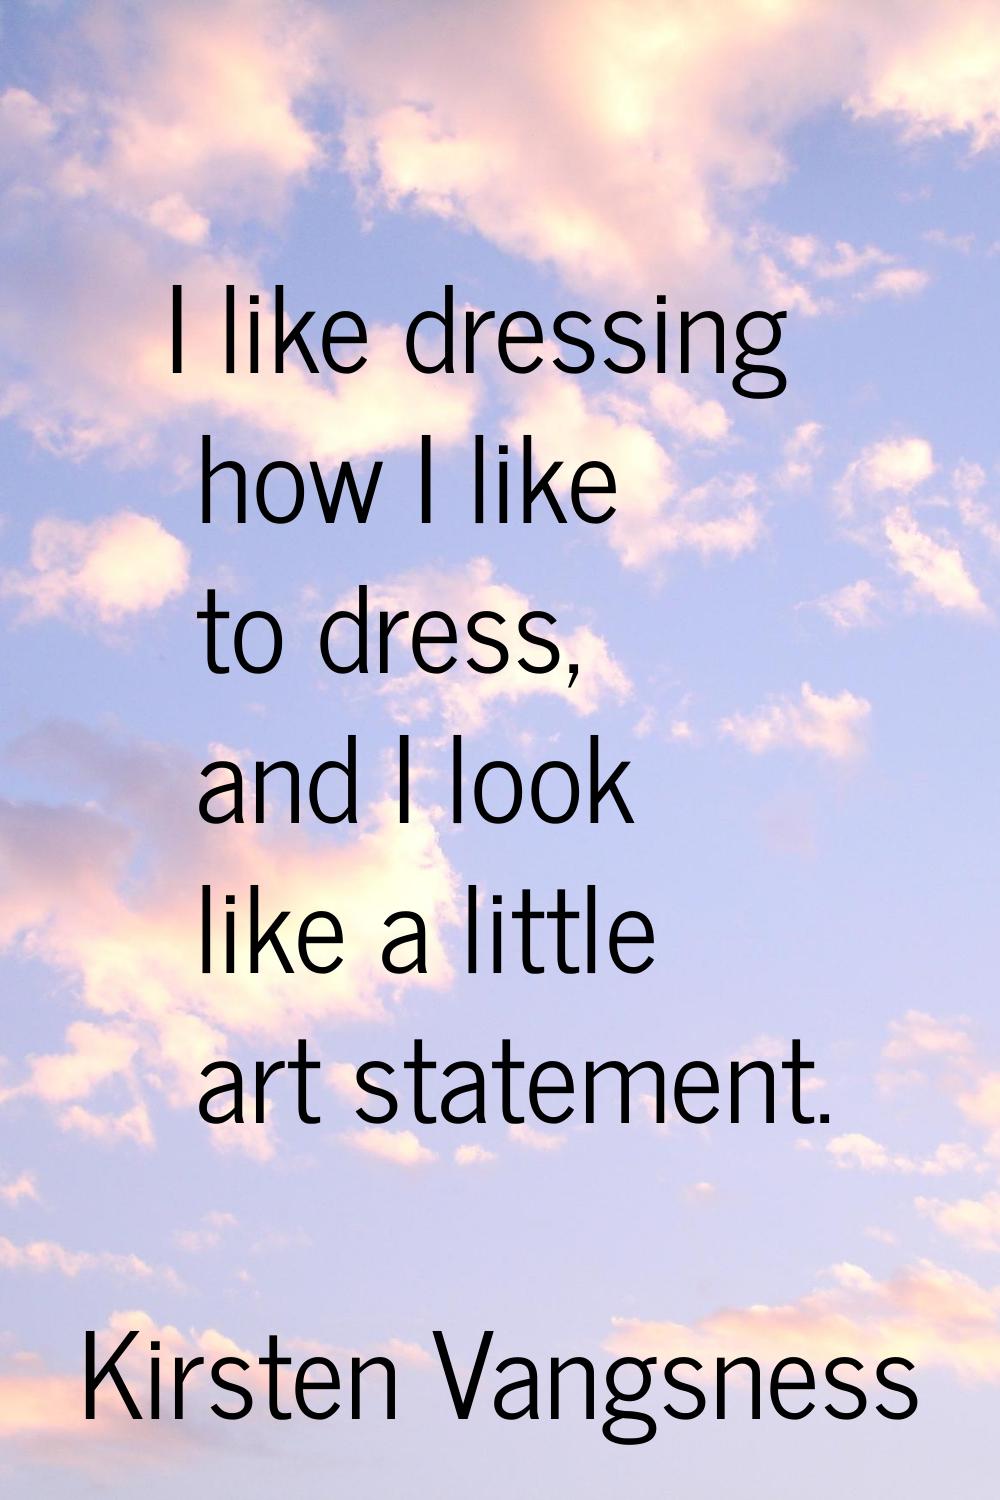 I like dressing how I like to dress, and I look like a little art statement.